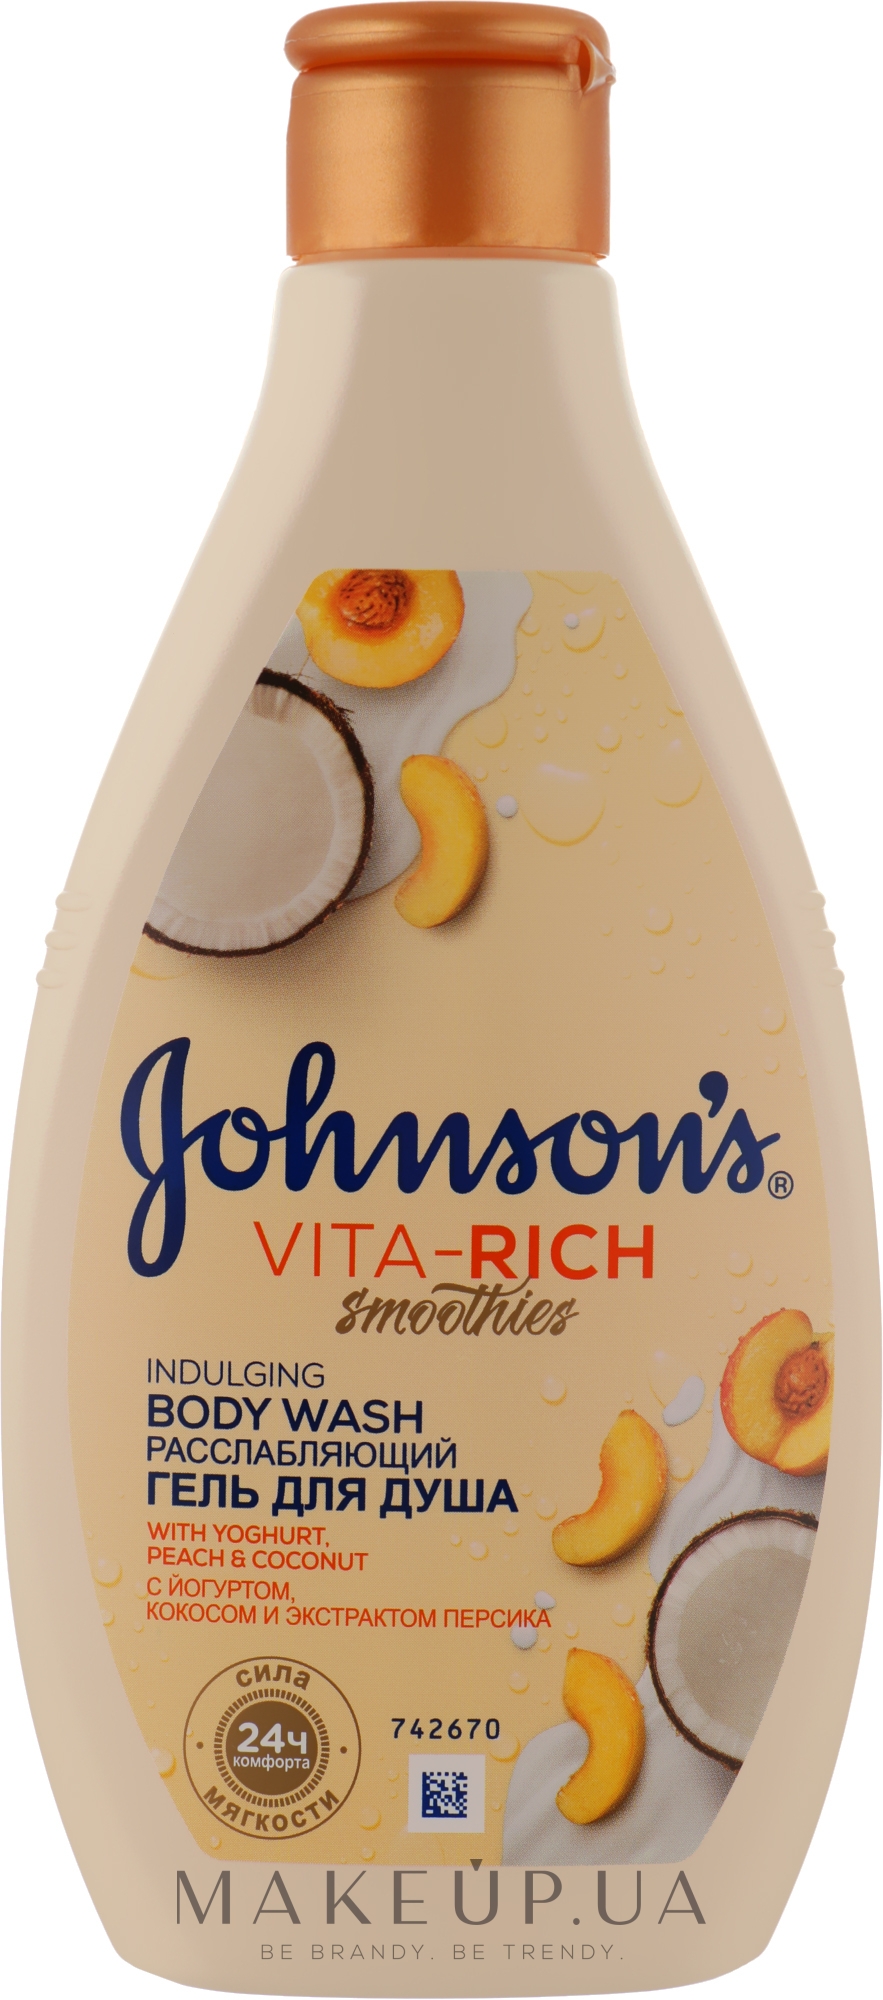 Расслабляющий гель для душа с йогуртом, кокосом и экстрактом персика - Johnson’s Vita-rich Smoothies — фото 250ml